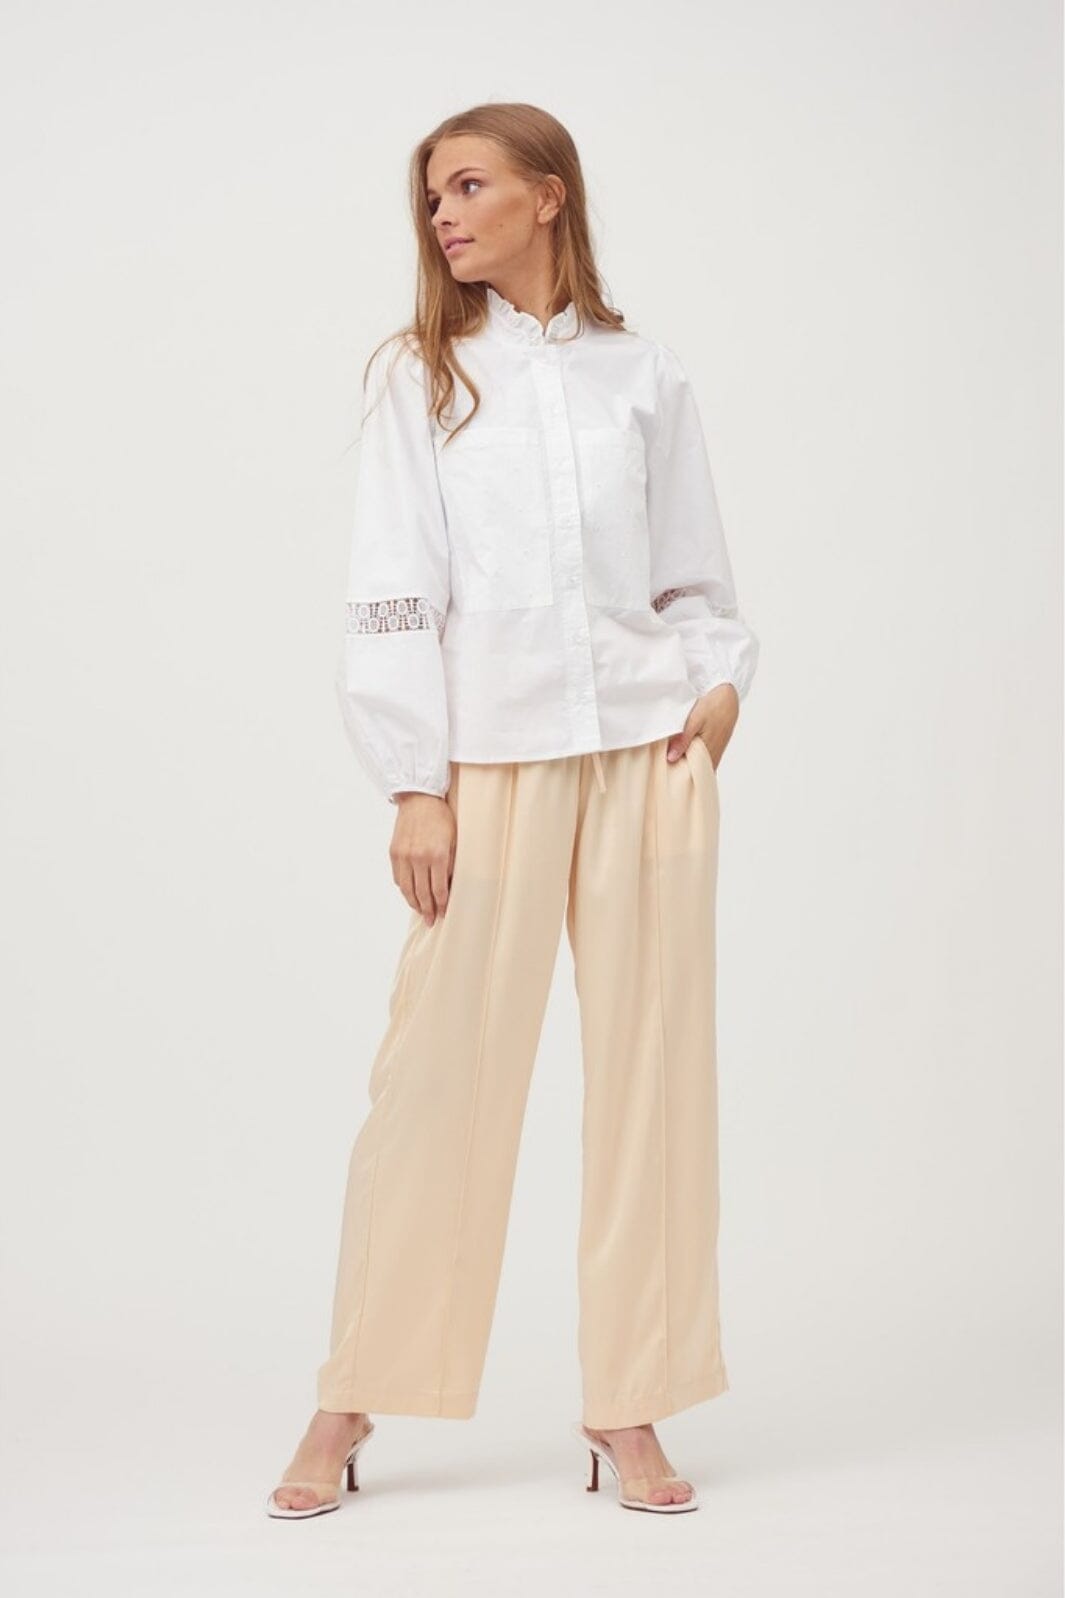 A-VIEW - Tiffany Shirt - 000 White Skjorter 